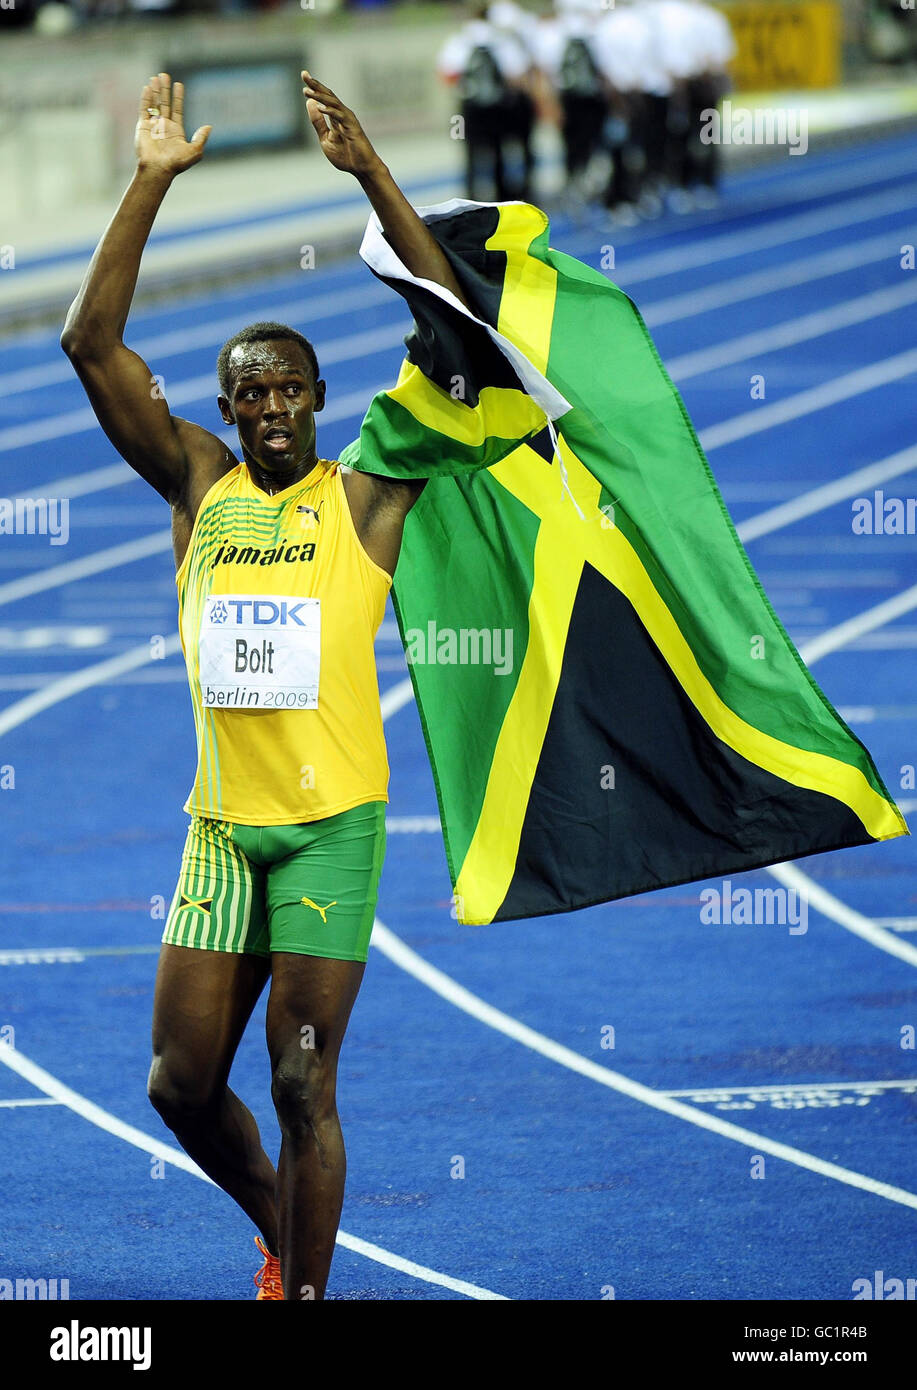 La Jamaïque Usain Bolt célèbre la victoire de la finale de 100m masculin  dans un nouveau record du monde de 9.58 secondes lors des Championnats du  monde de l'IAAF à l'Olympiastadion, Berlin